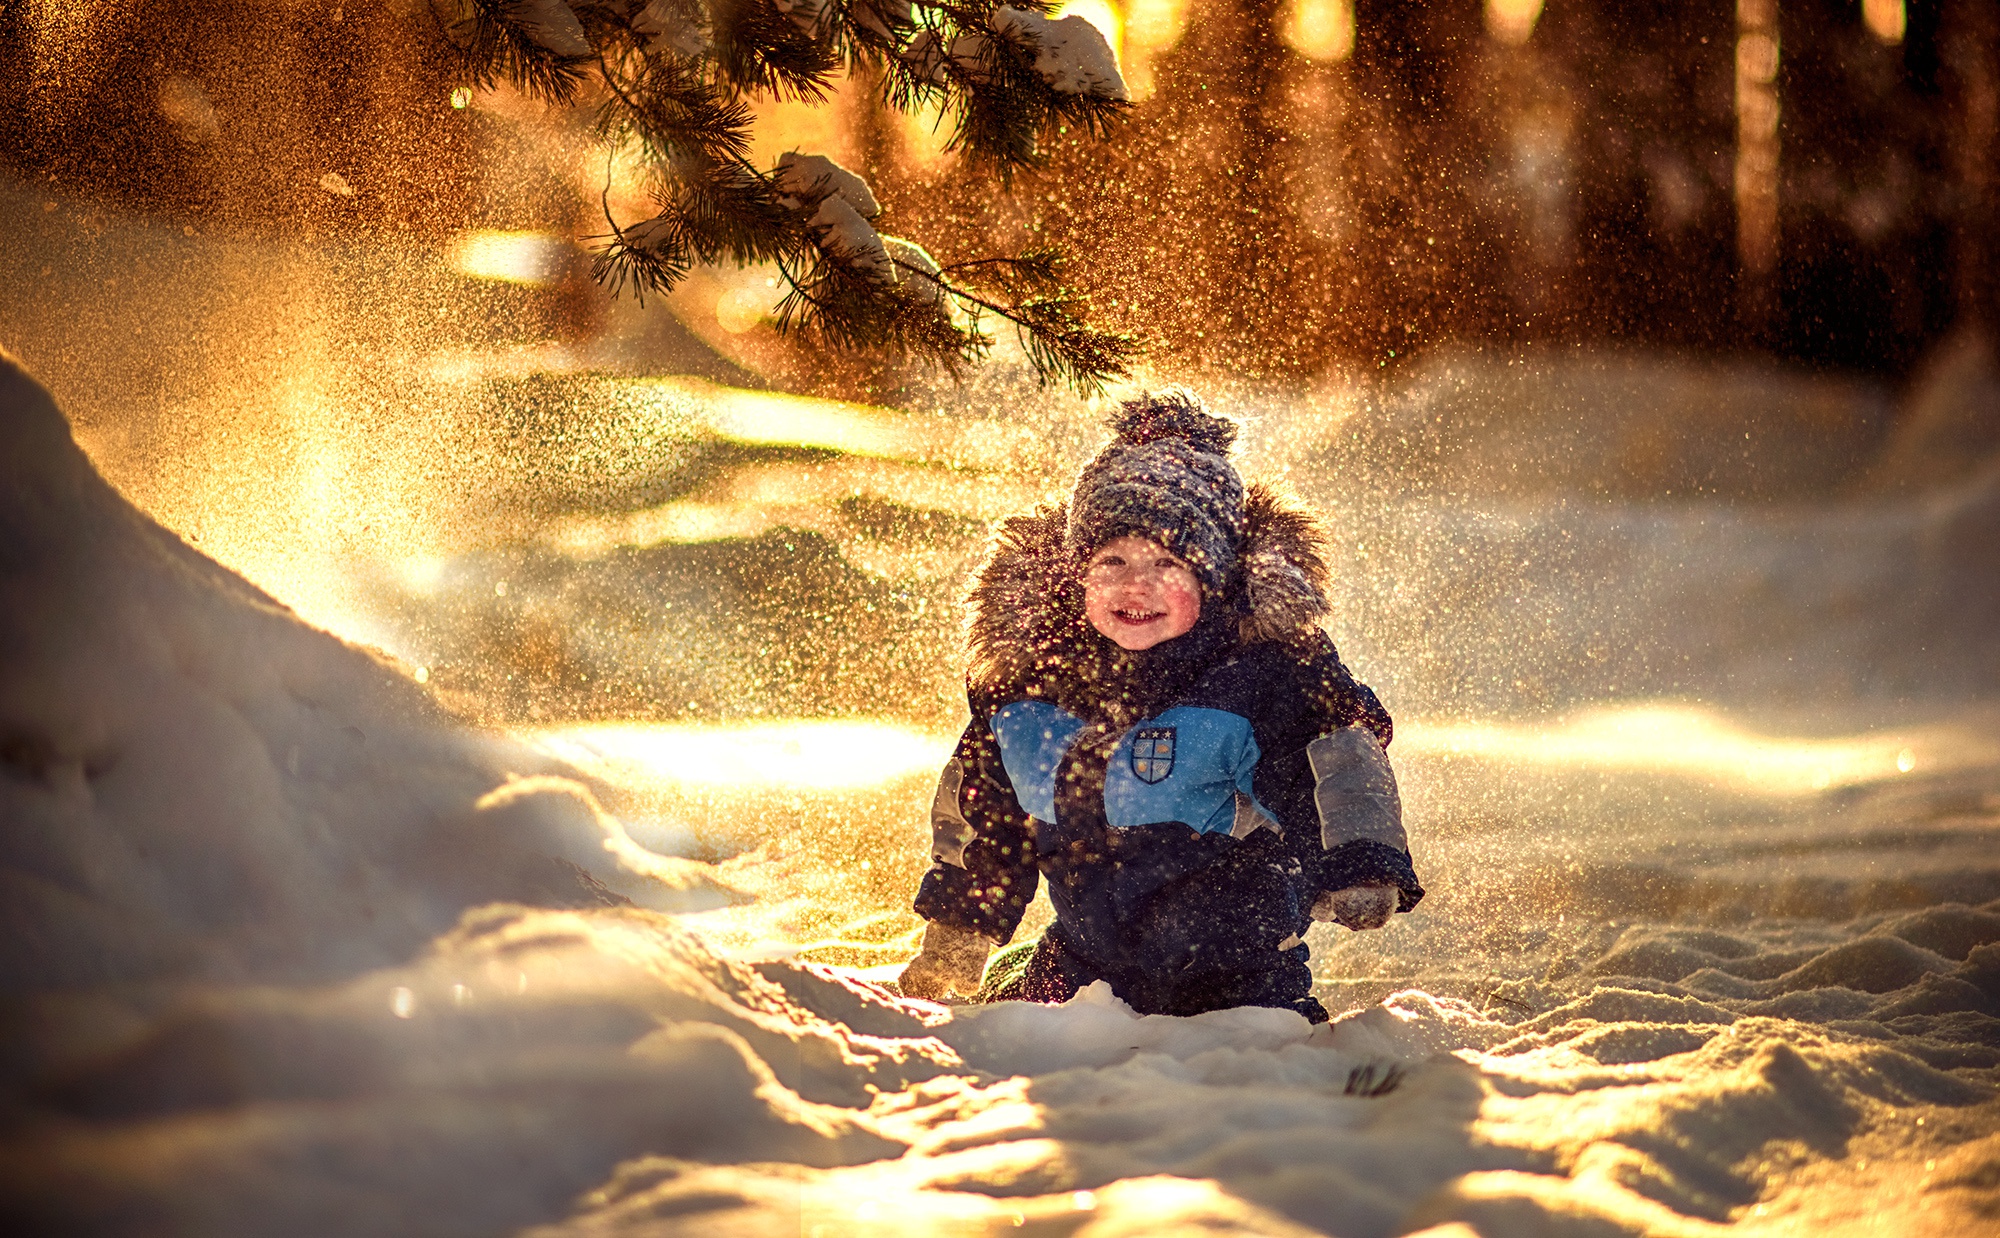 Скачать обои бесплатно Зима, Снег, Ребенок, Фотографии, Глубина Резкости, Маленький Мальчик картинка на рабочий стол ПК